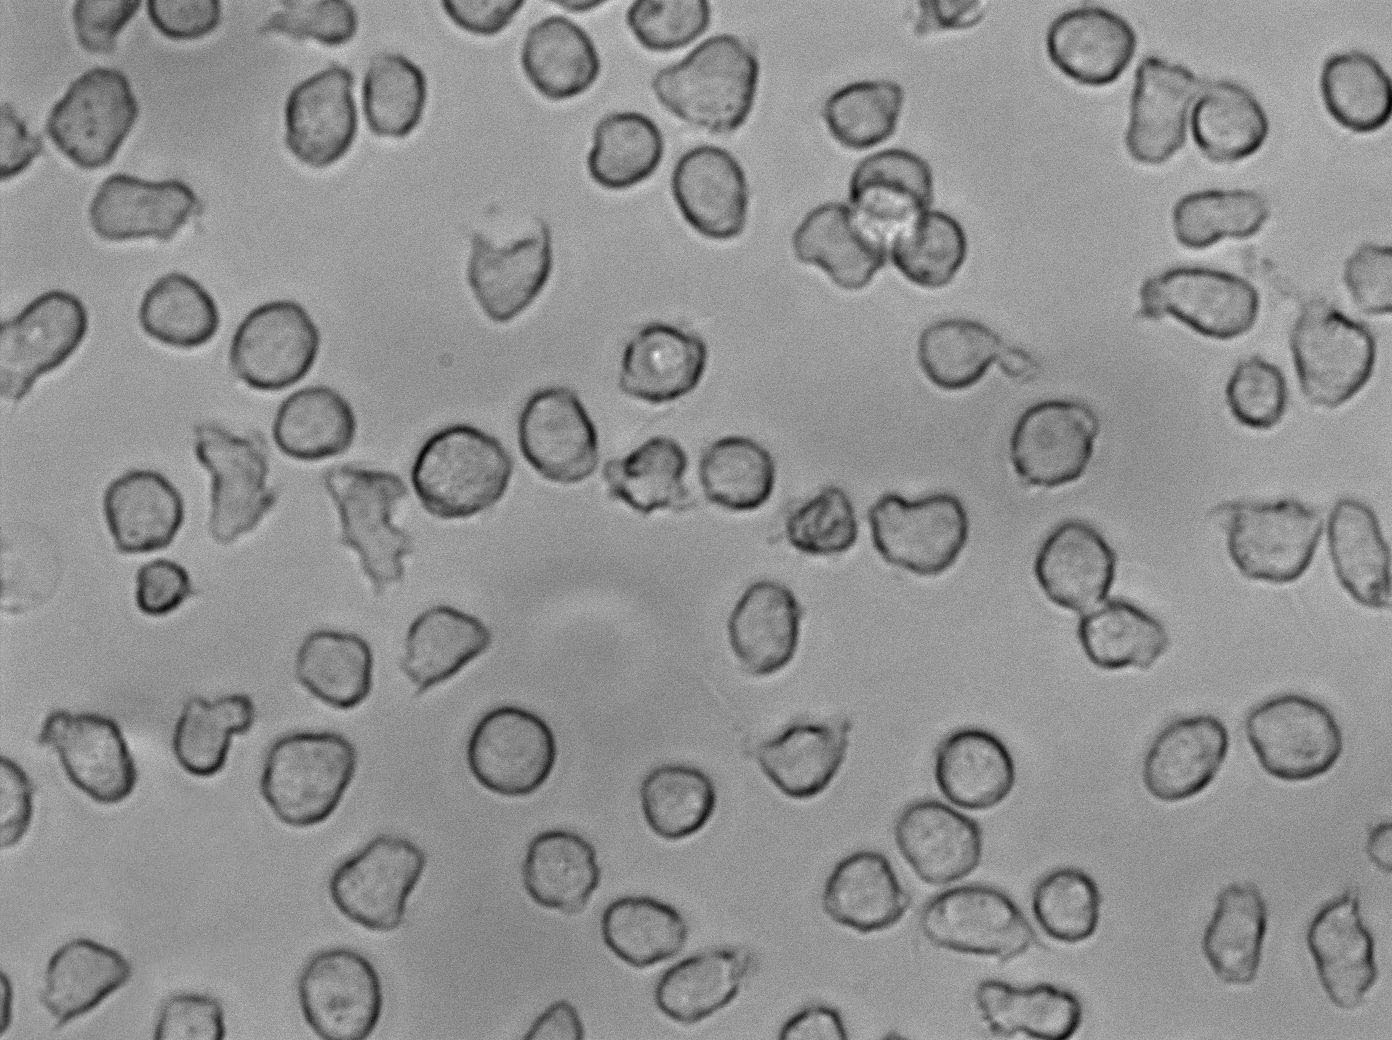 RPMI-7666 Cell|人外周血B淋巴细胞